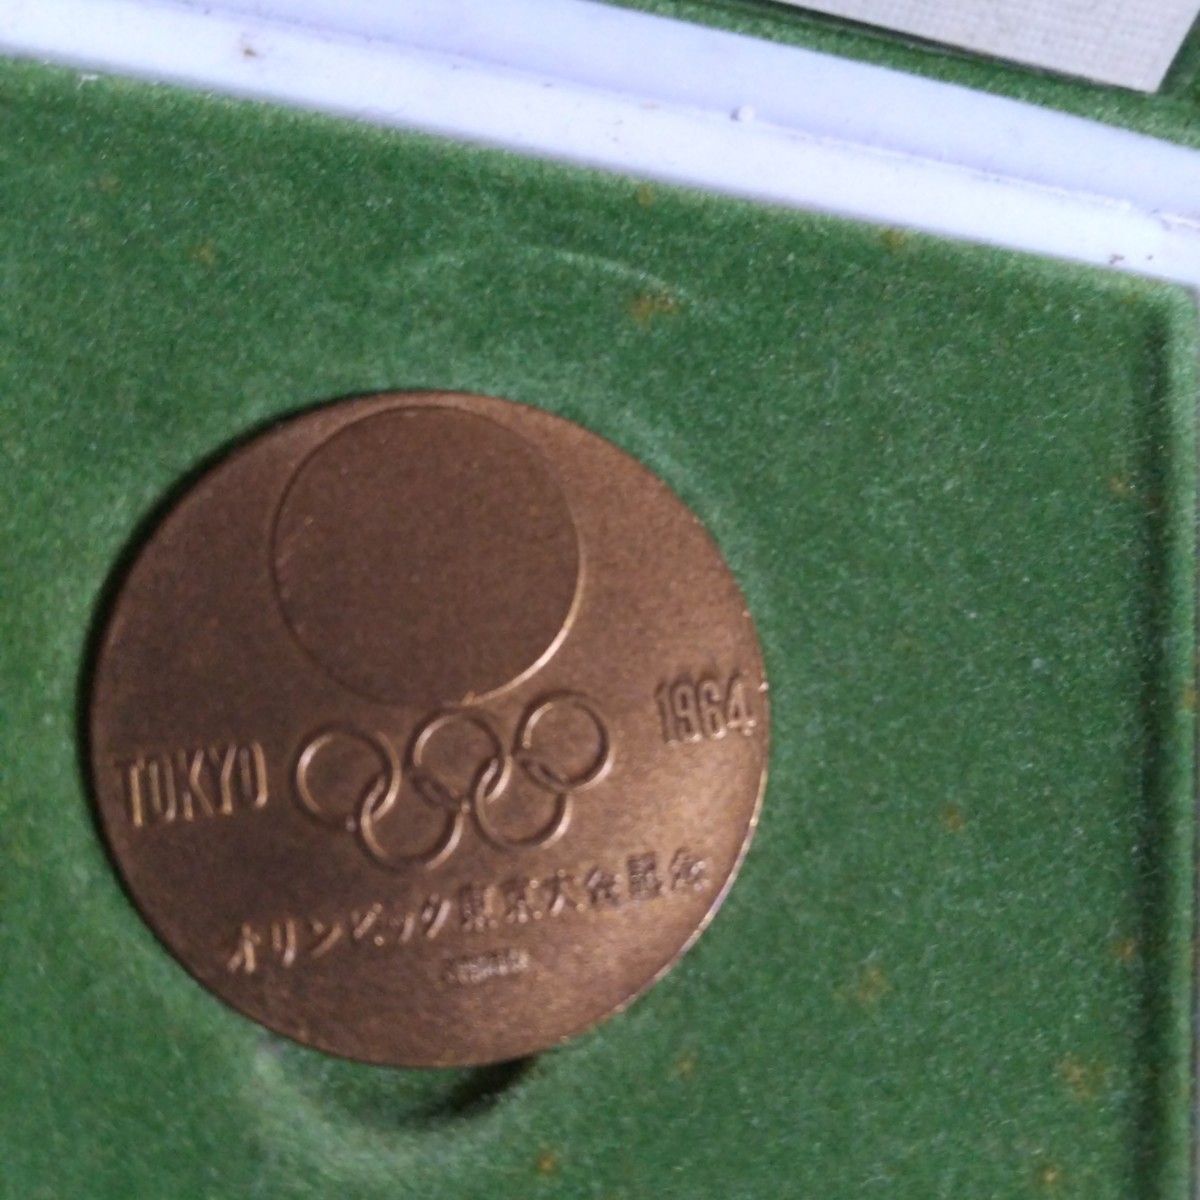 1964東京オリンピック 記念メダル